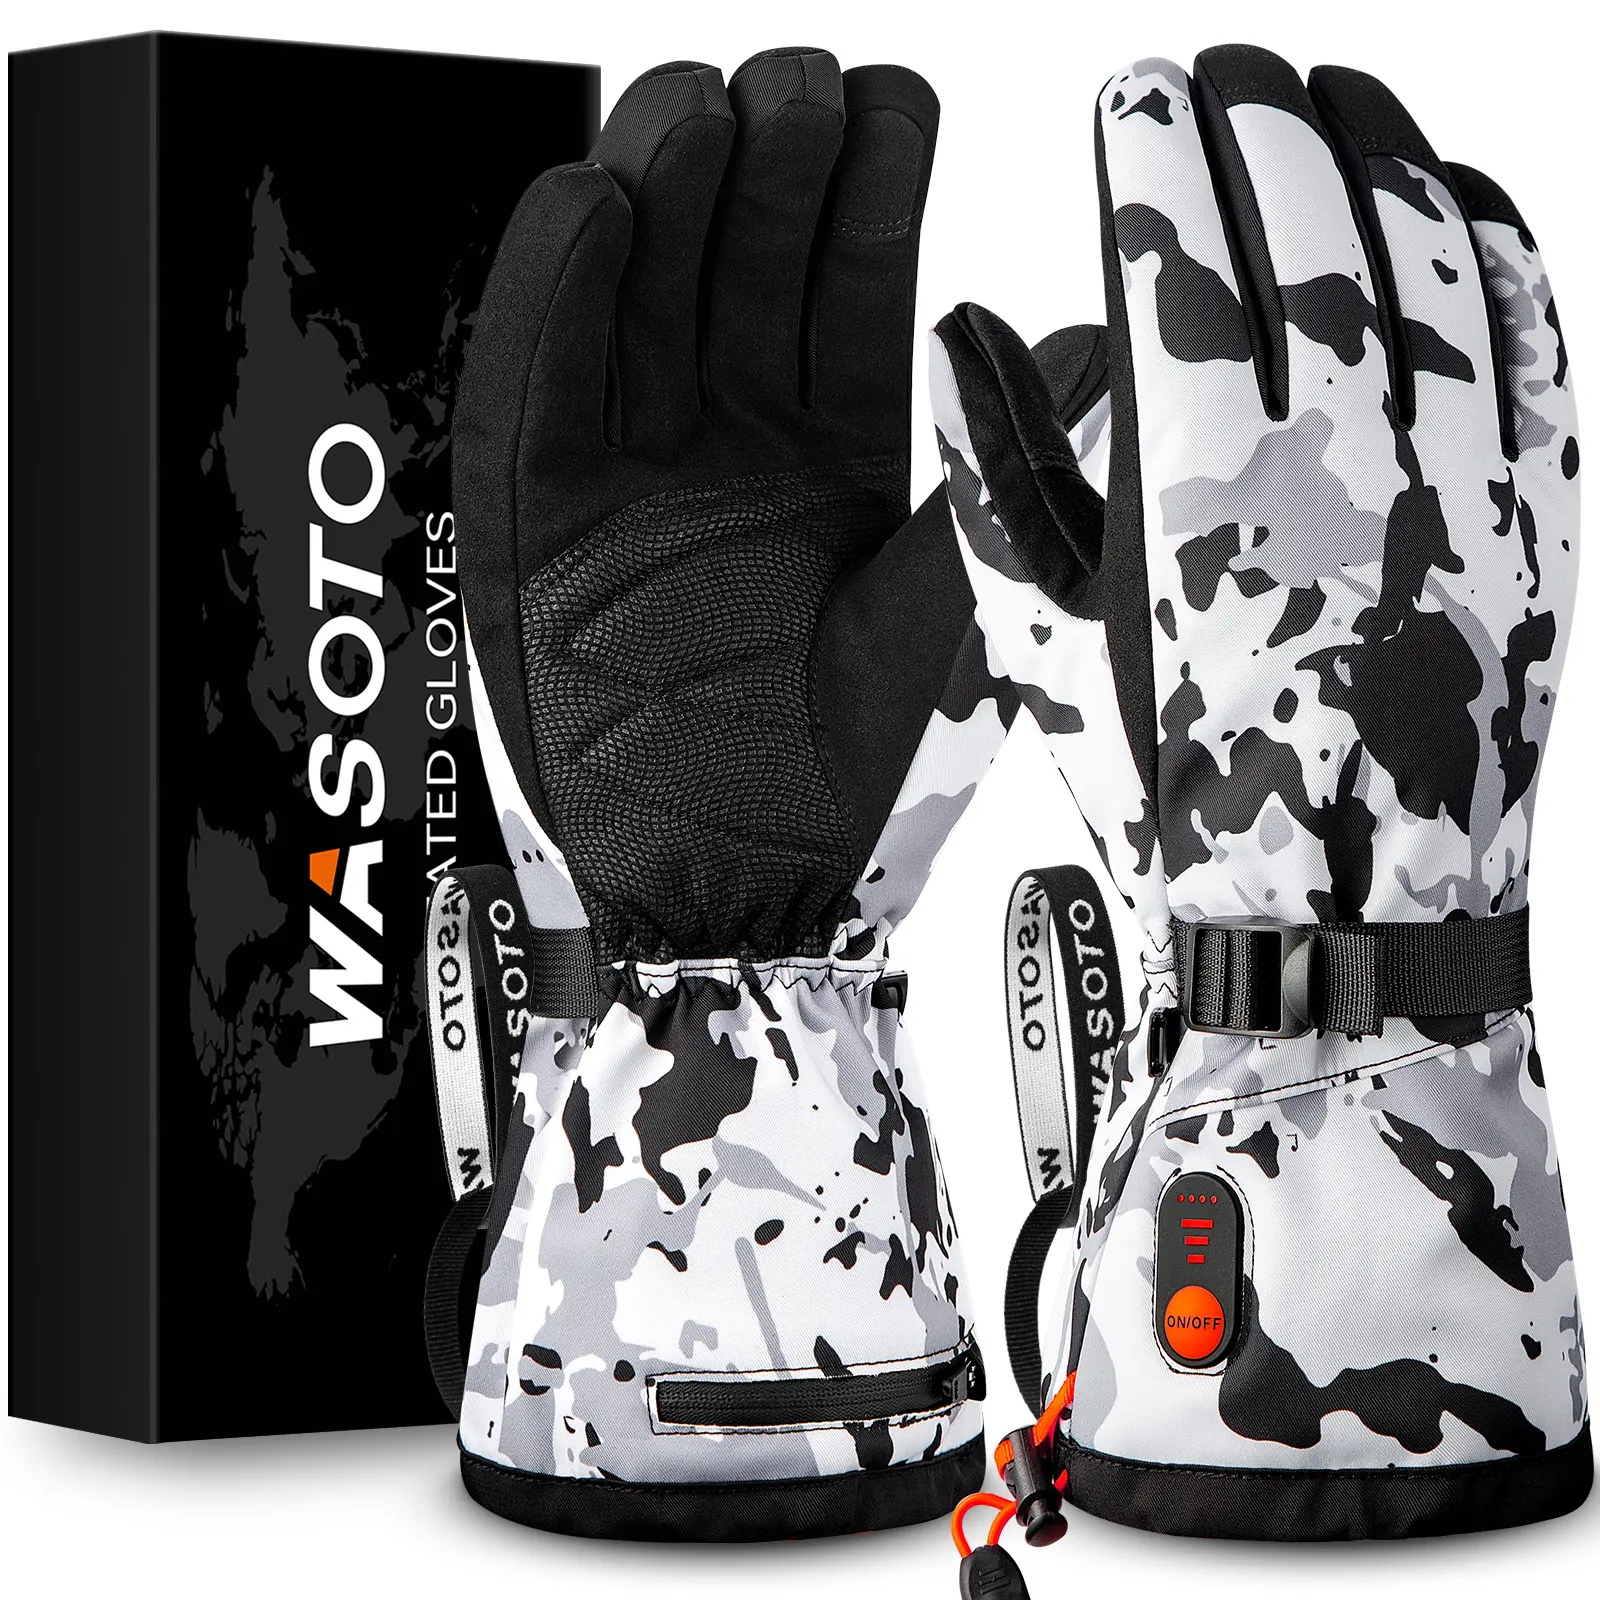 OEM nhà sản xuất màn hình cảm ứng trắng ngụy trang găng tay nóng có thể sạc lại pin sưởi ấm găng tay trượt tuyết săn bắn